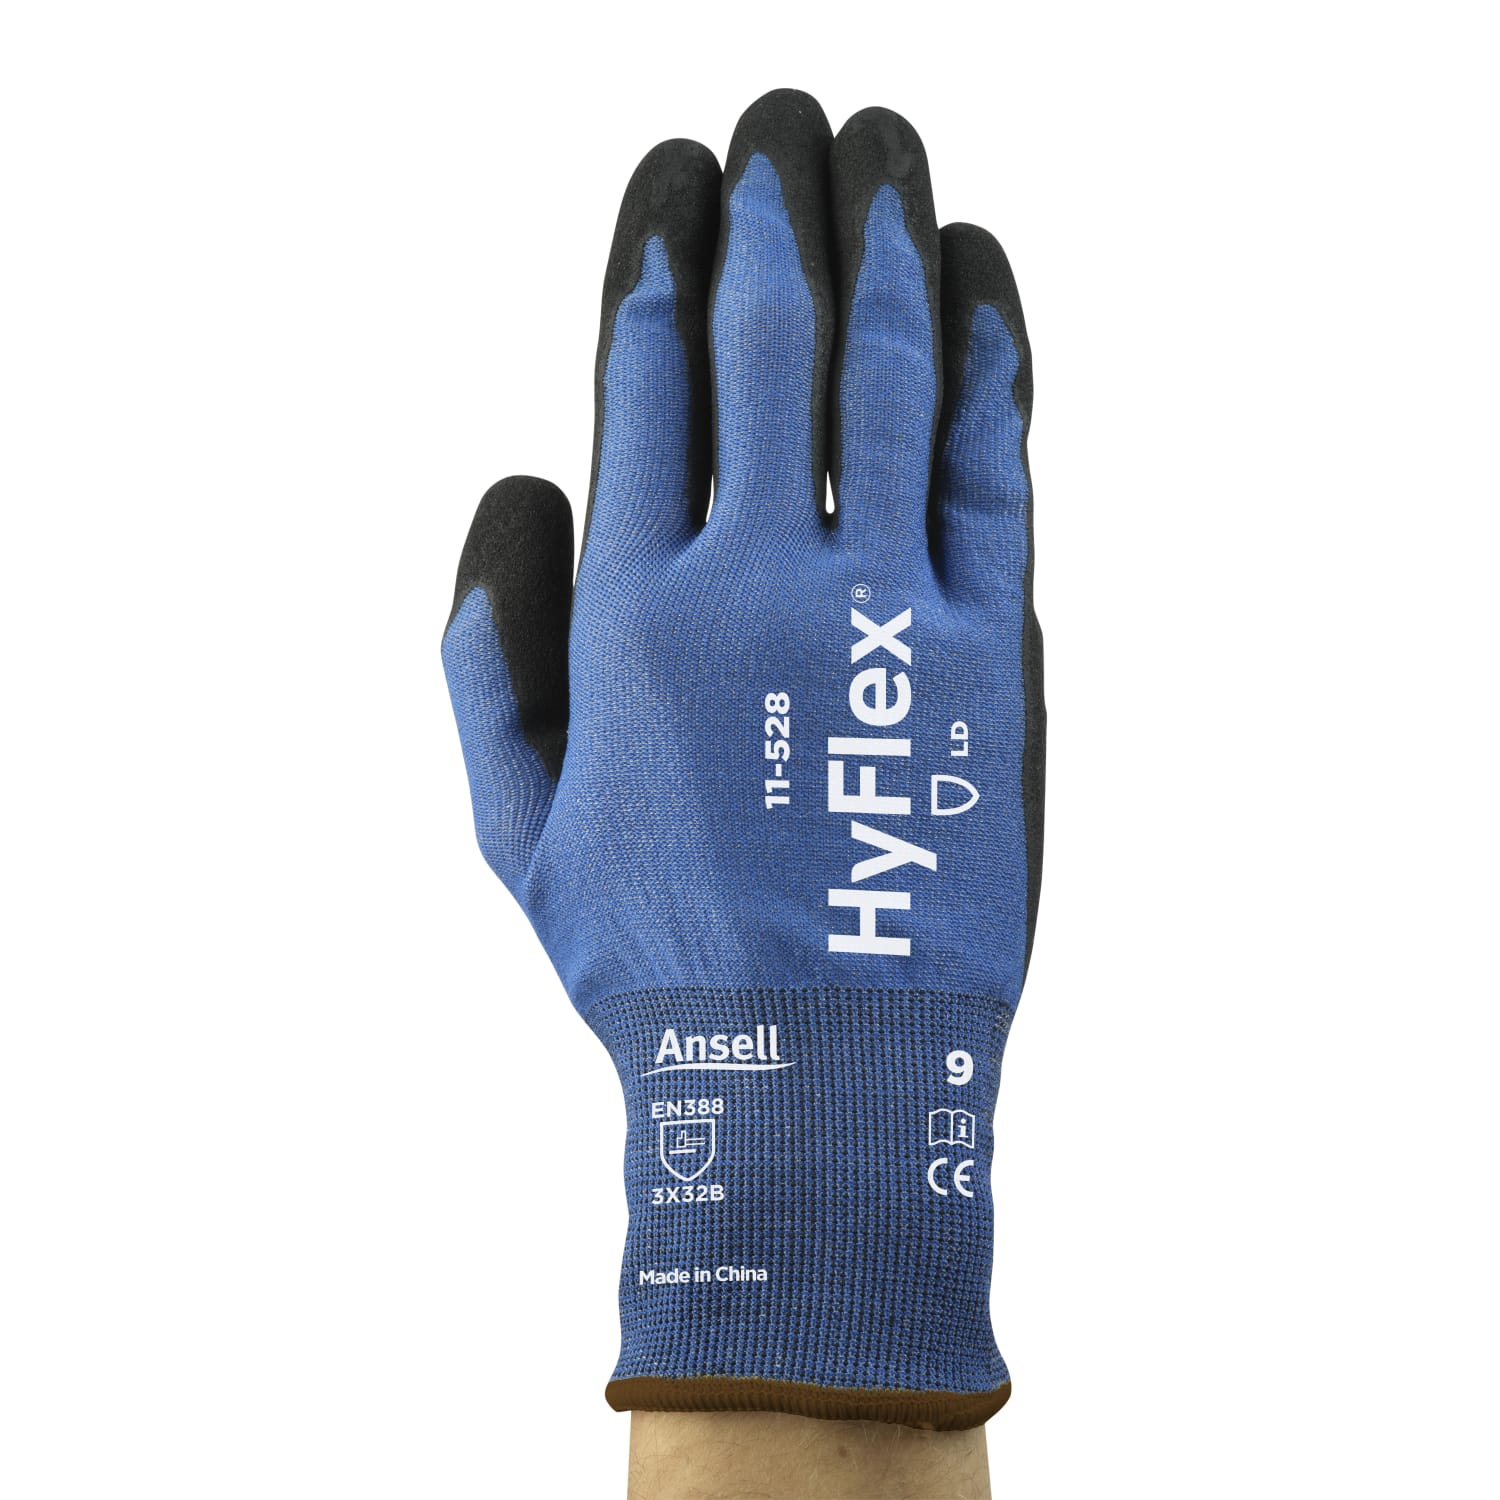 Gant de protection anti-coupure Ansell HyFlex 11-528 enduction nitrile taille 8 photo du produit Back View ZOOM